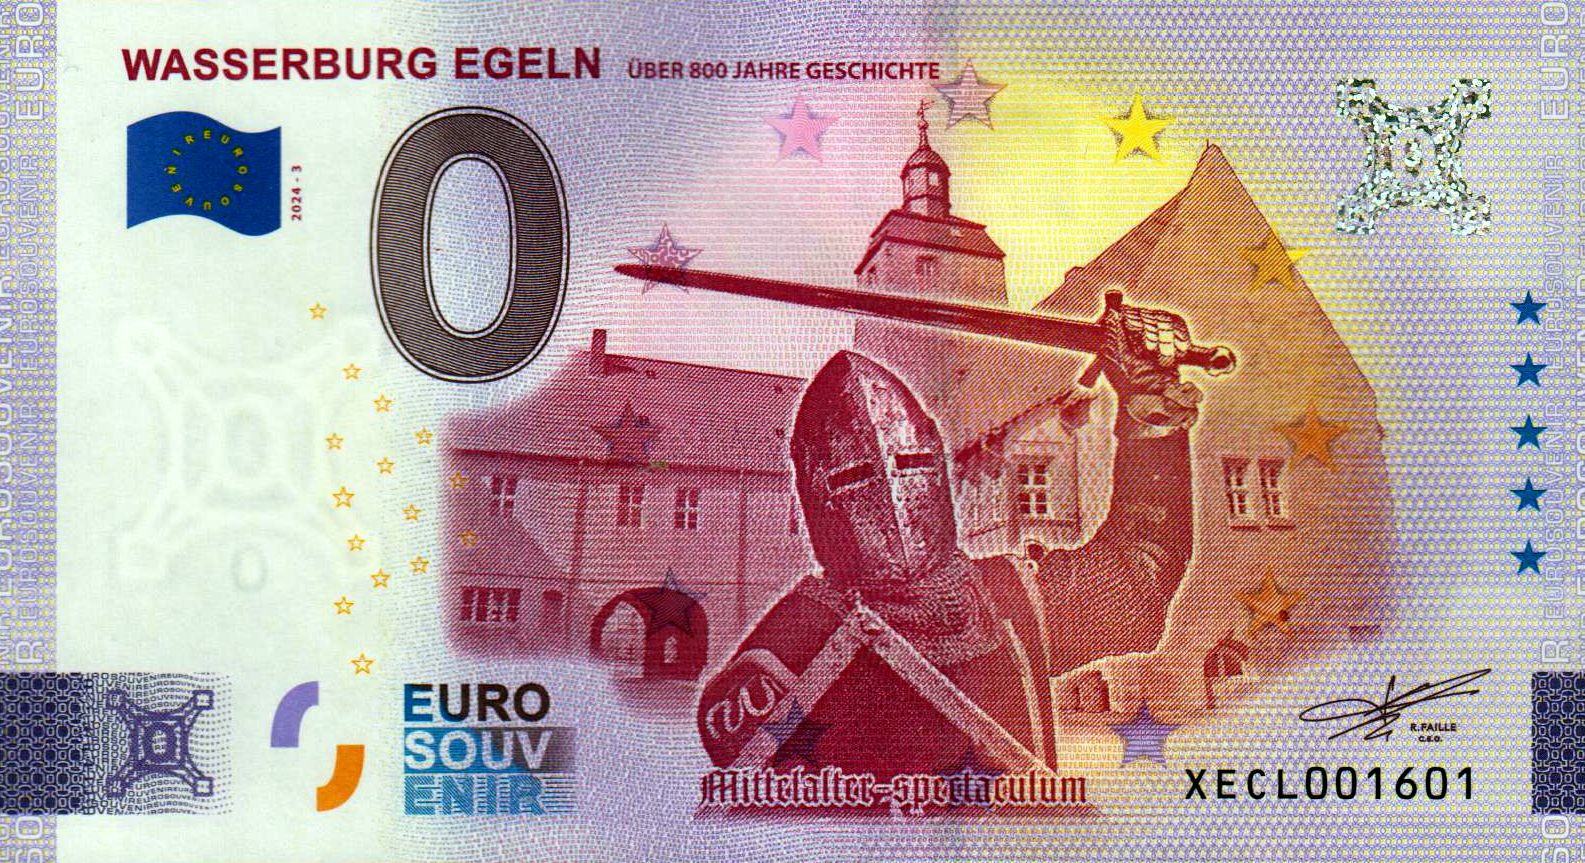 Wasserburg Egeln - Mittelalter-spectaculum 2024-3